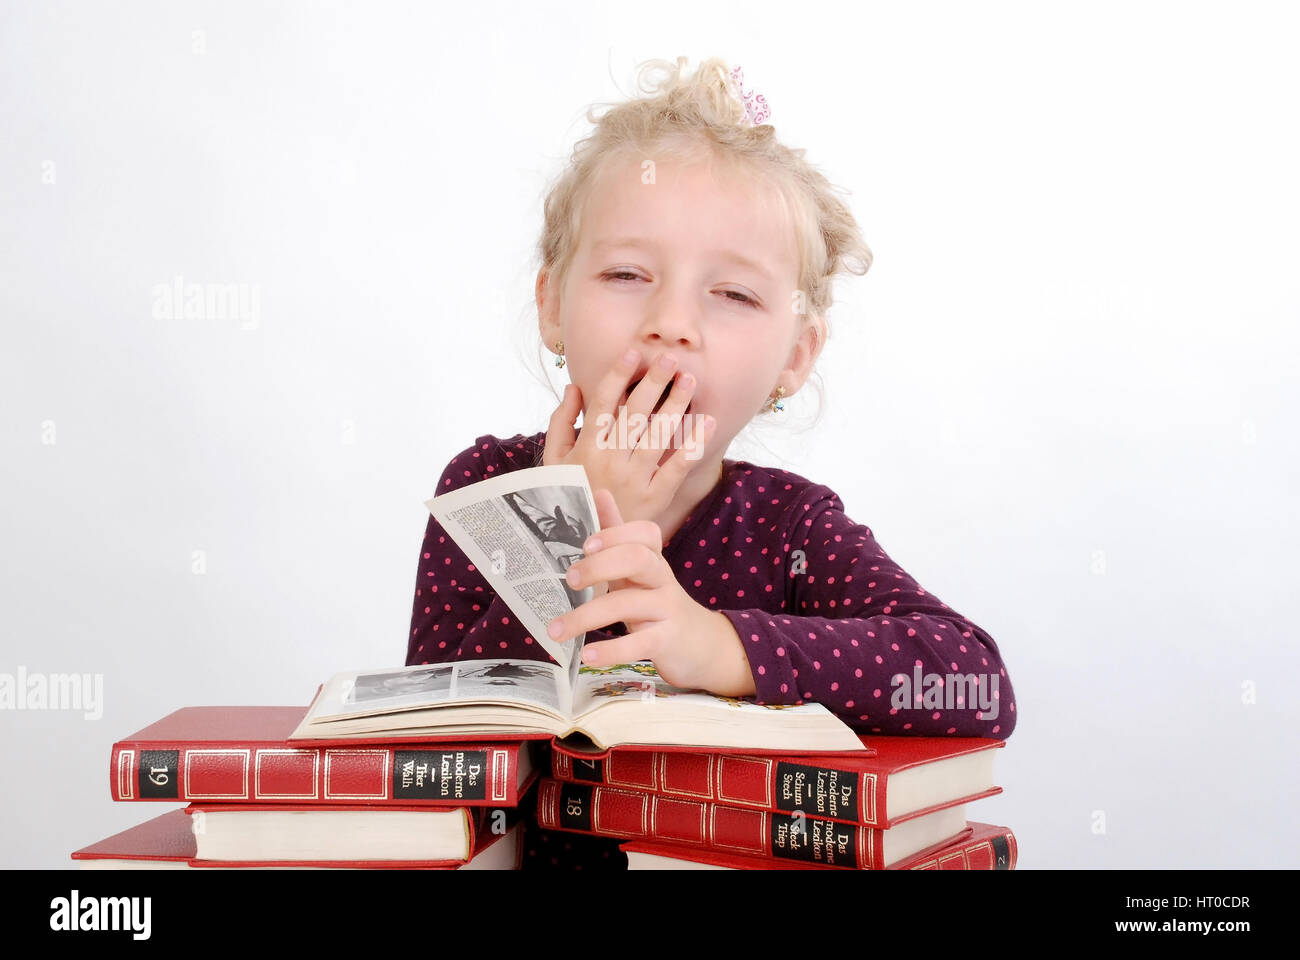 Gelangweiltes, kleines M?dchen sitzt ?ber Buchstapel und g?hnt - bored, little girl with books Stock Photo